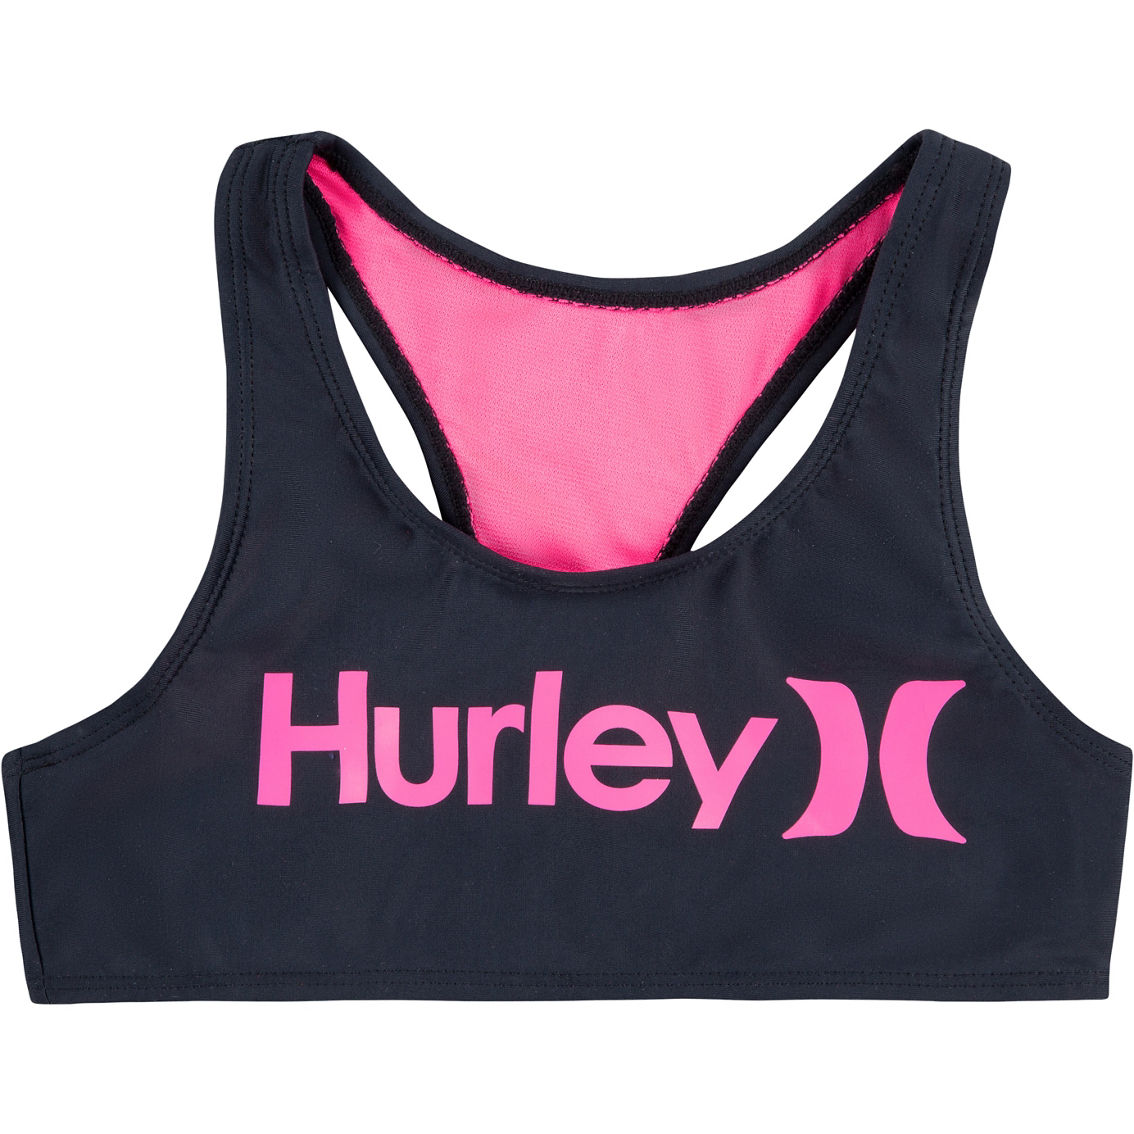 Hurley Girls Racerback Bikini Swimsuit - Image 3 of 4